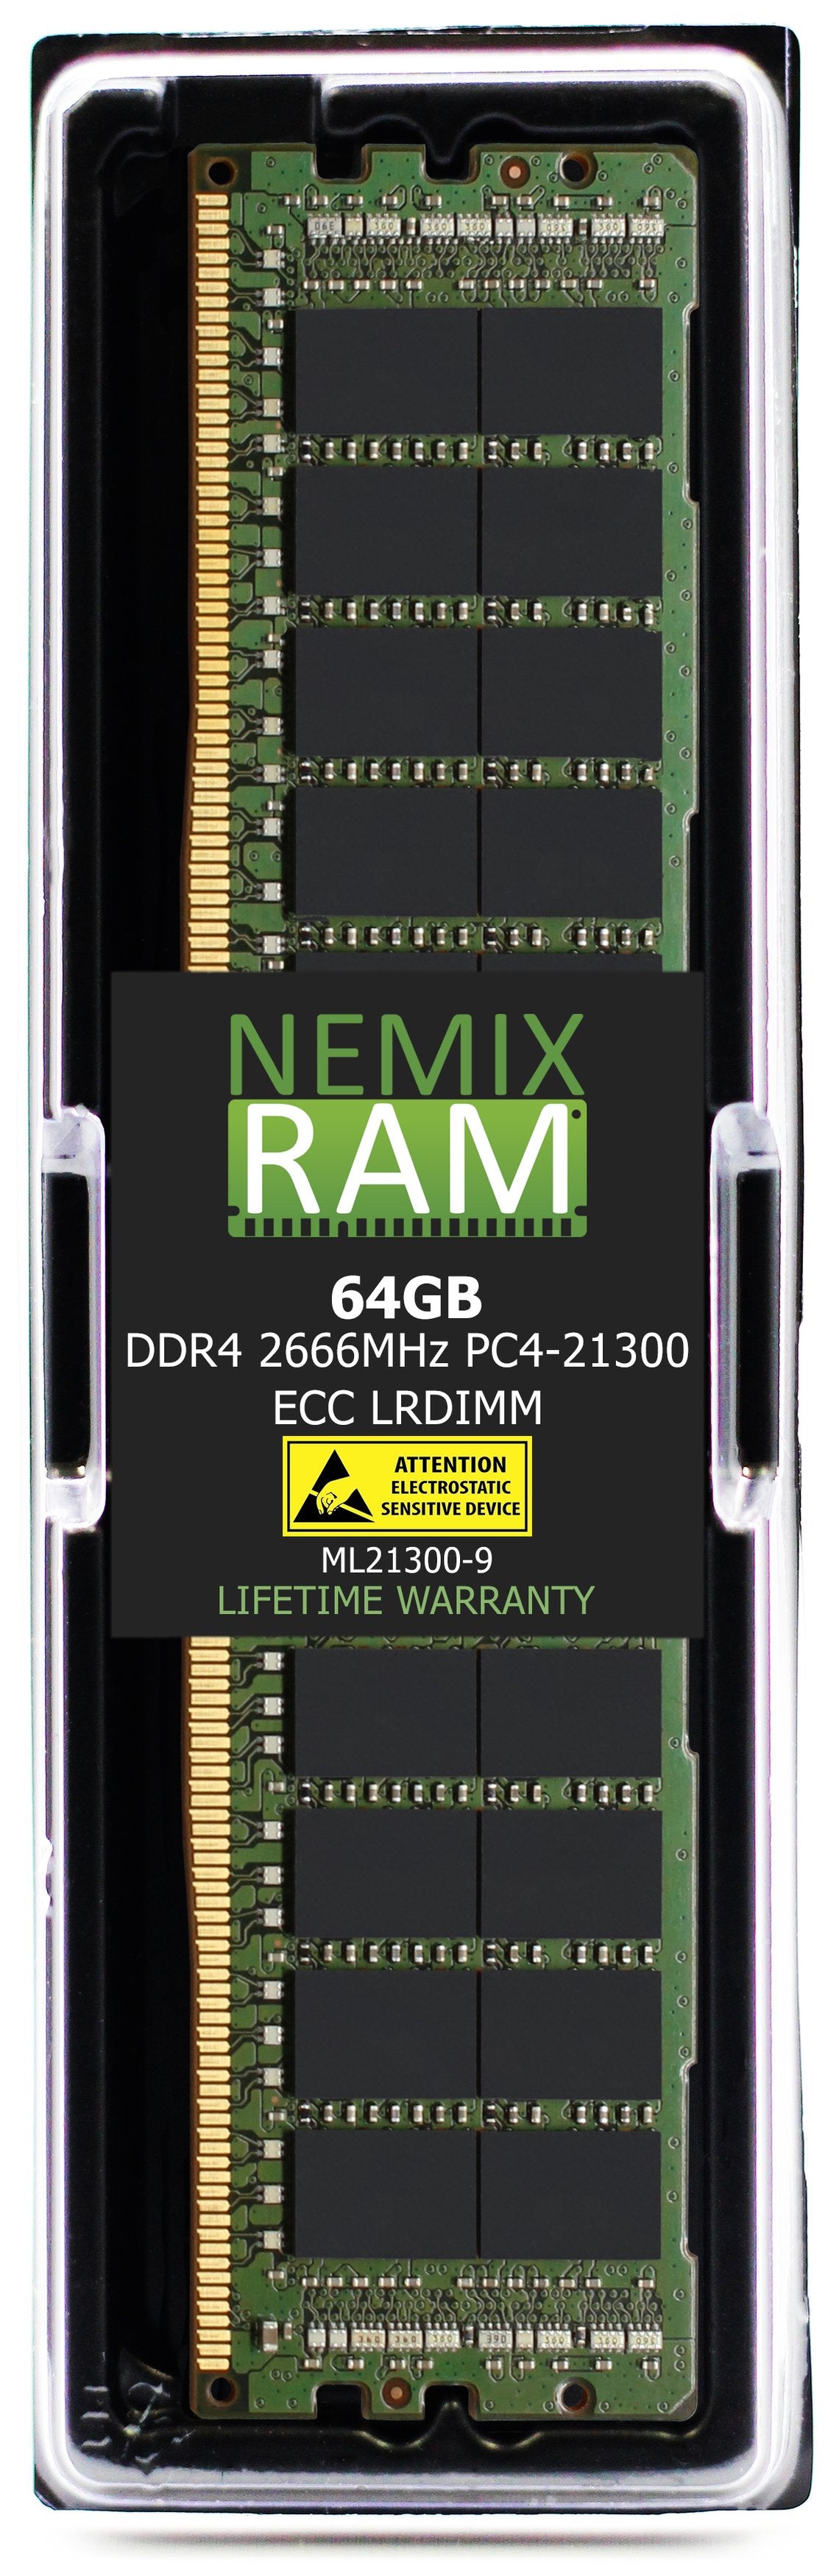 64GB DDR4 2666MHZ PC4-21300 LRDIMM Compatible with Supermicro MEM-DR464L-CL02-LR26